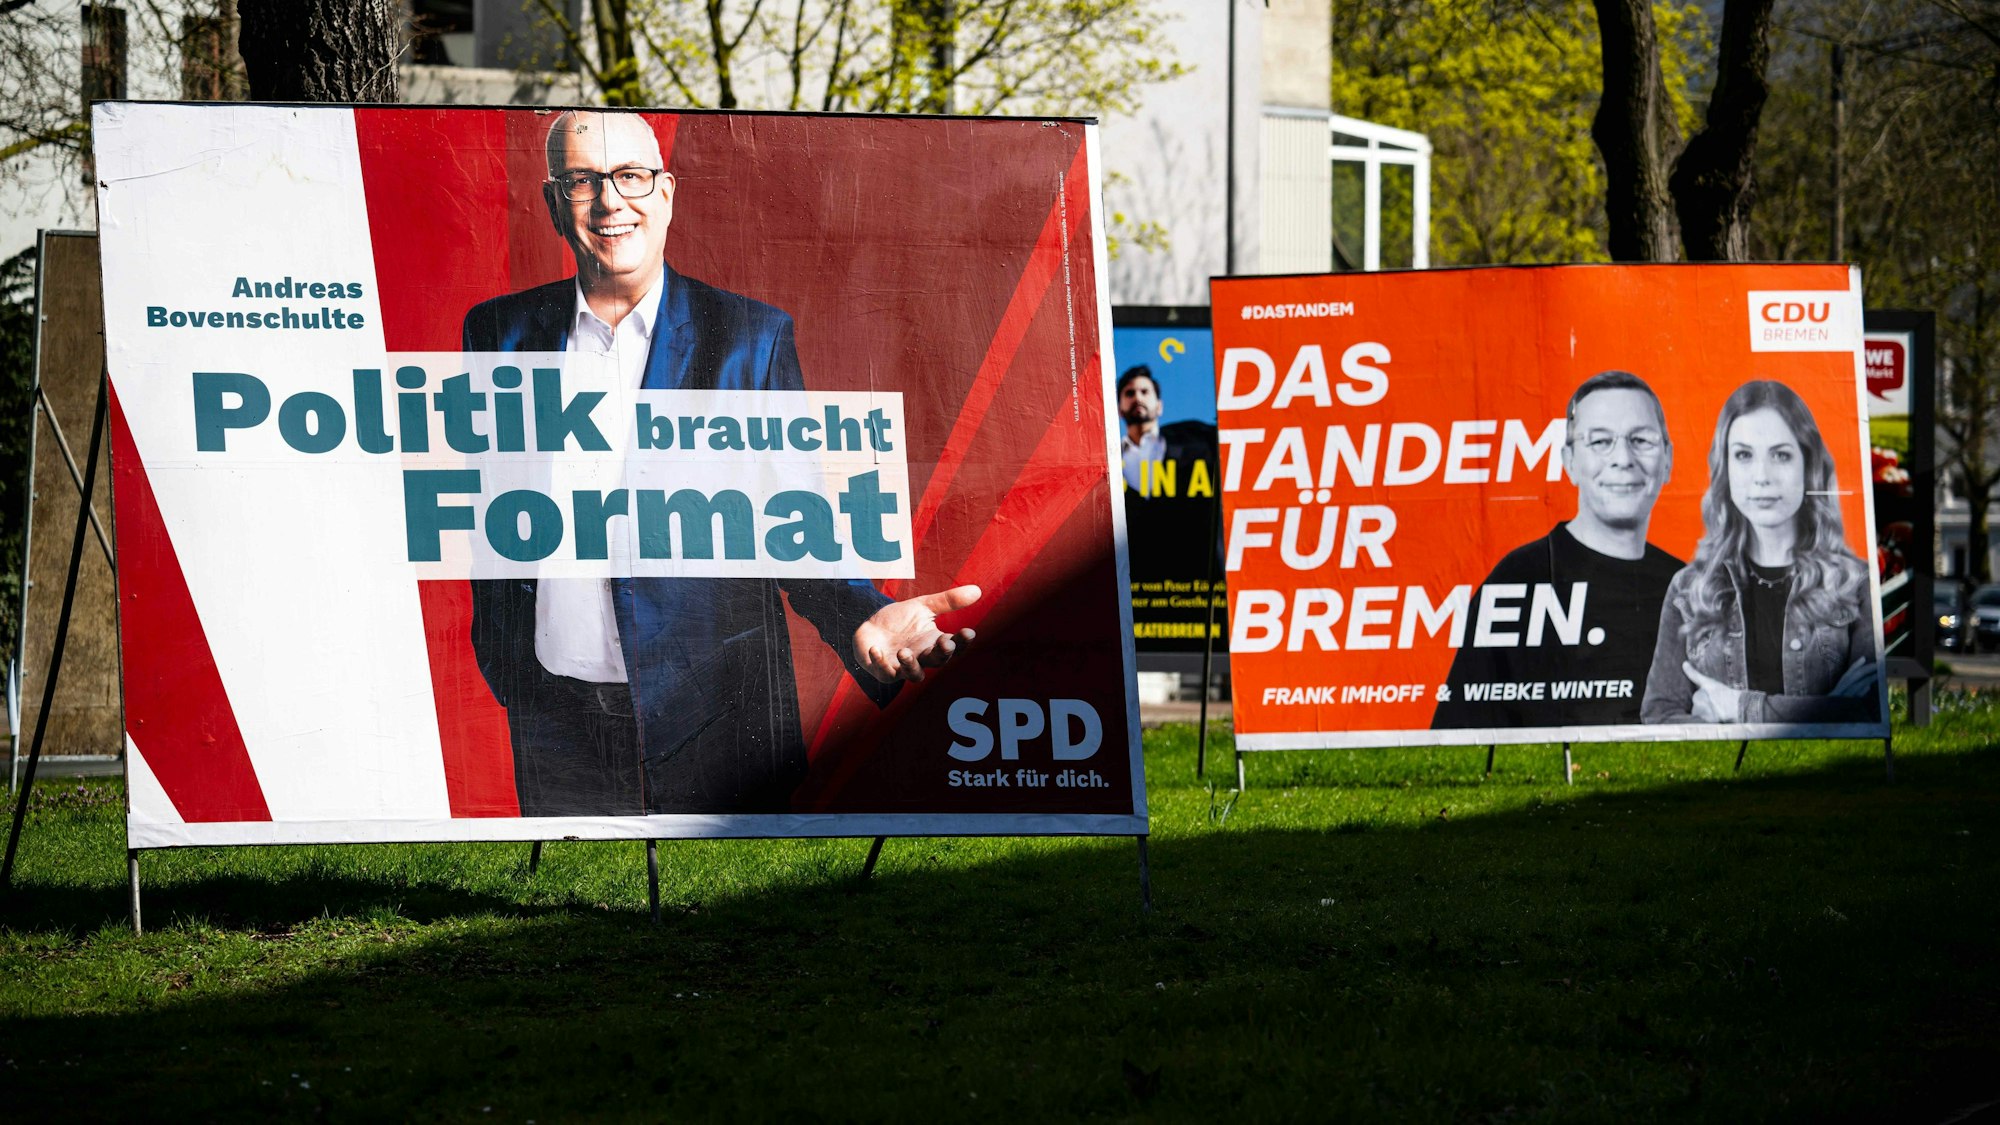 Wahlplakate der SPD und der CDU stehen in Bremen am Straßenrand. „Politik braucht Format“ wirbt die SPD, „Das Tandem für Bremen“ wirbt die CDU.